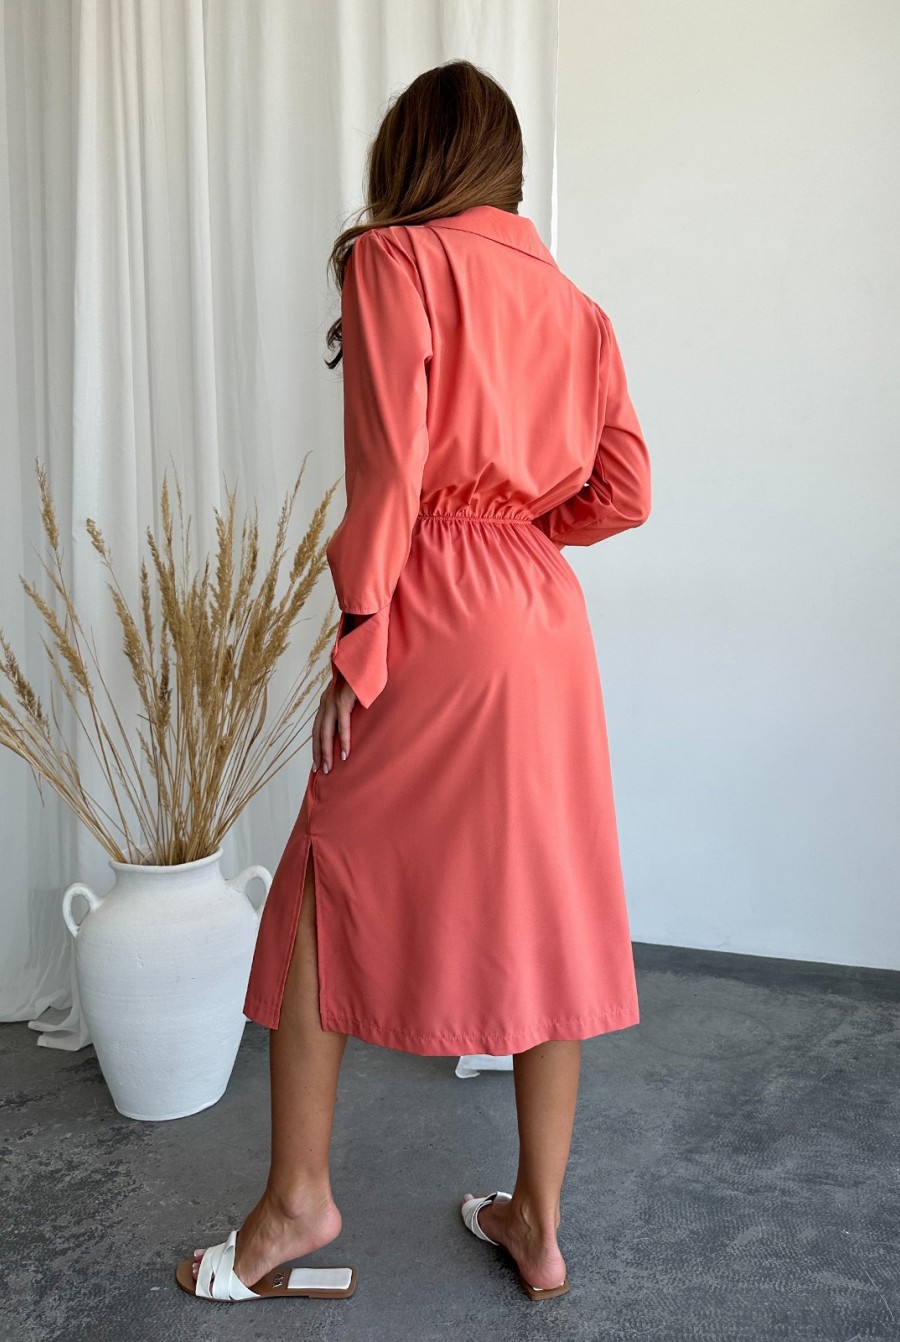 Терракотовое платье-халат с декольте - Фото 3